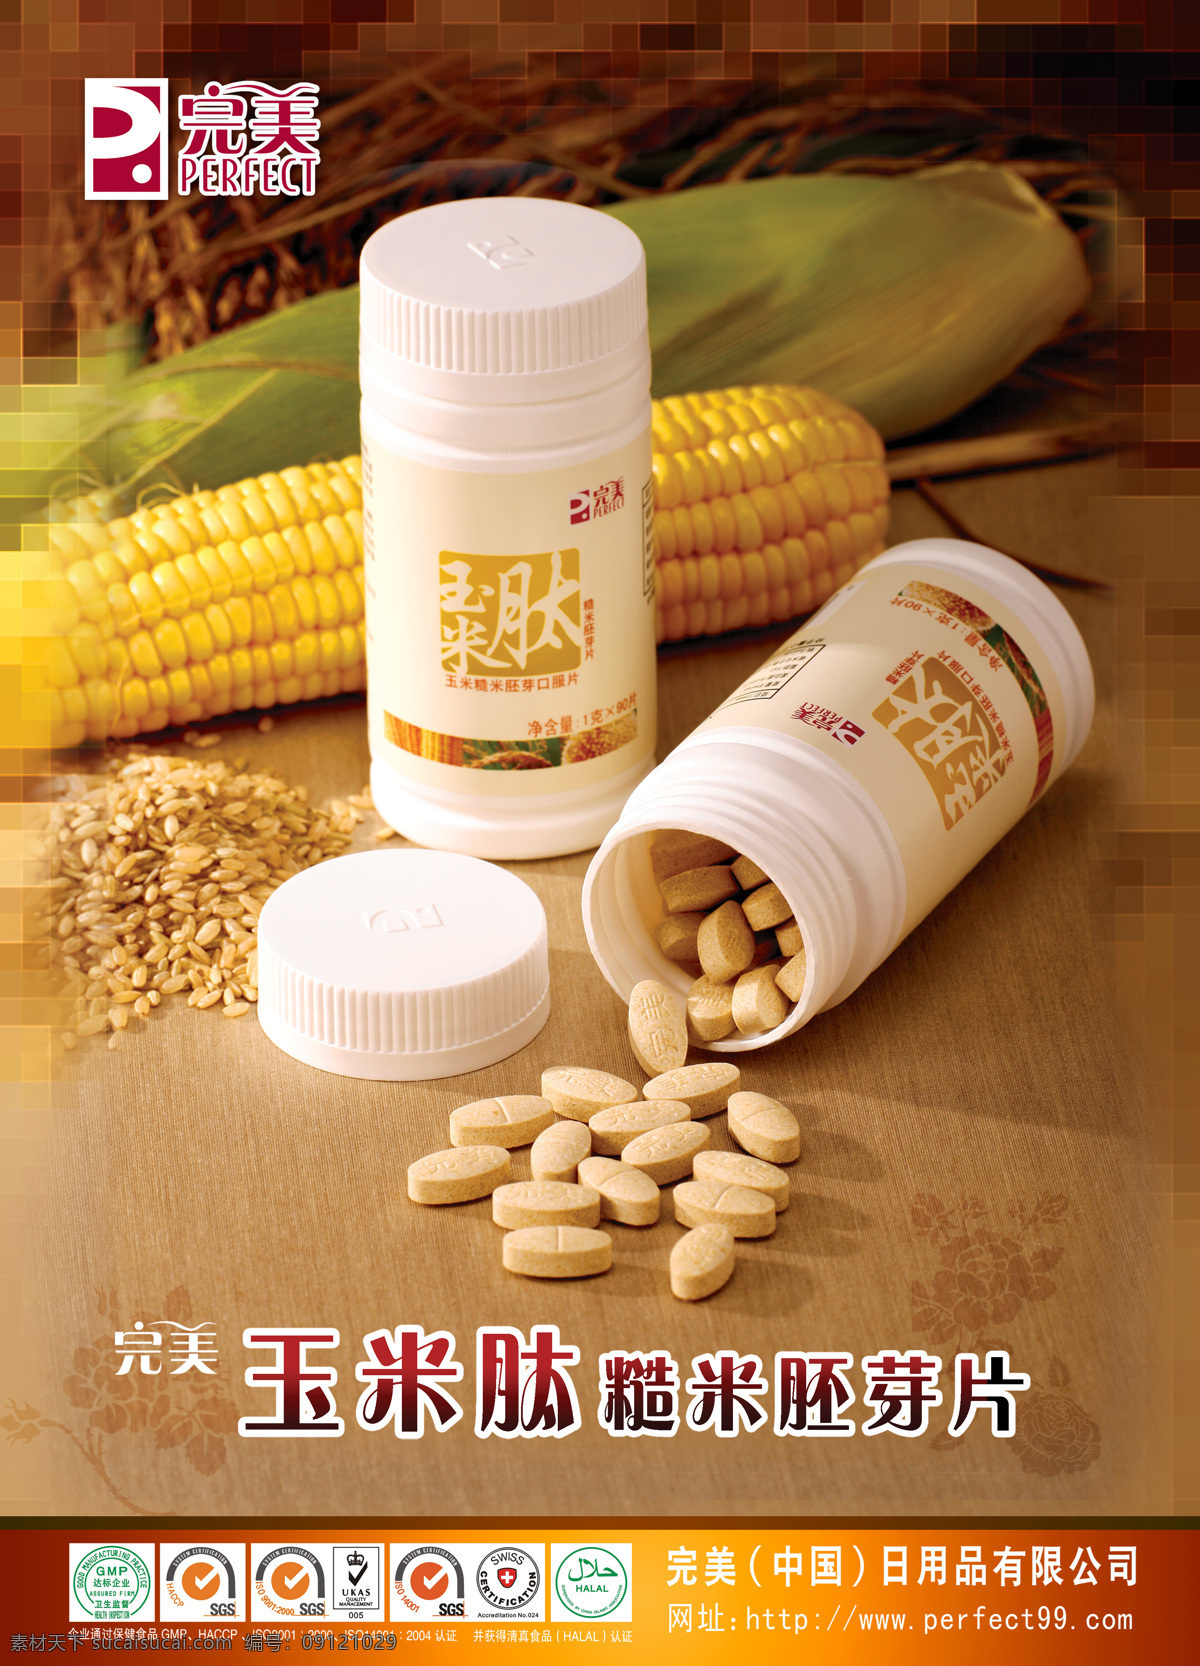 完美产品 宣传单 广告画 印刷品 综合图 保健食品认证 食品安全认证 玉米肽 完美事业素材